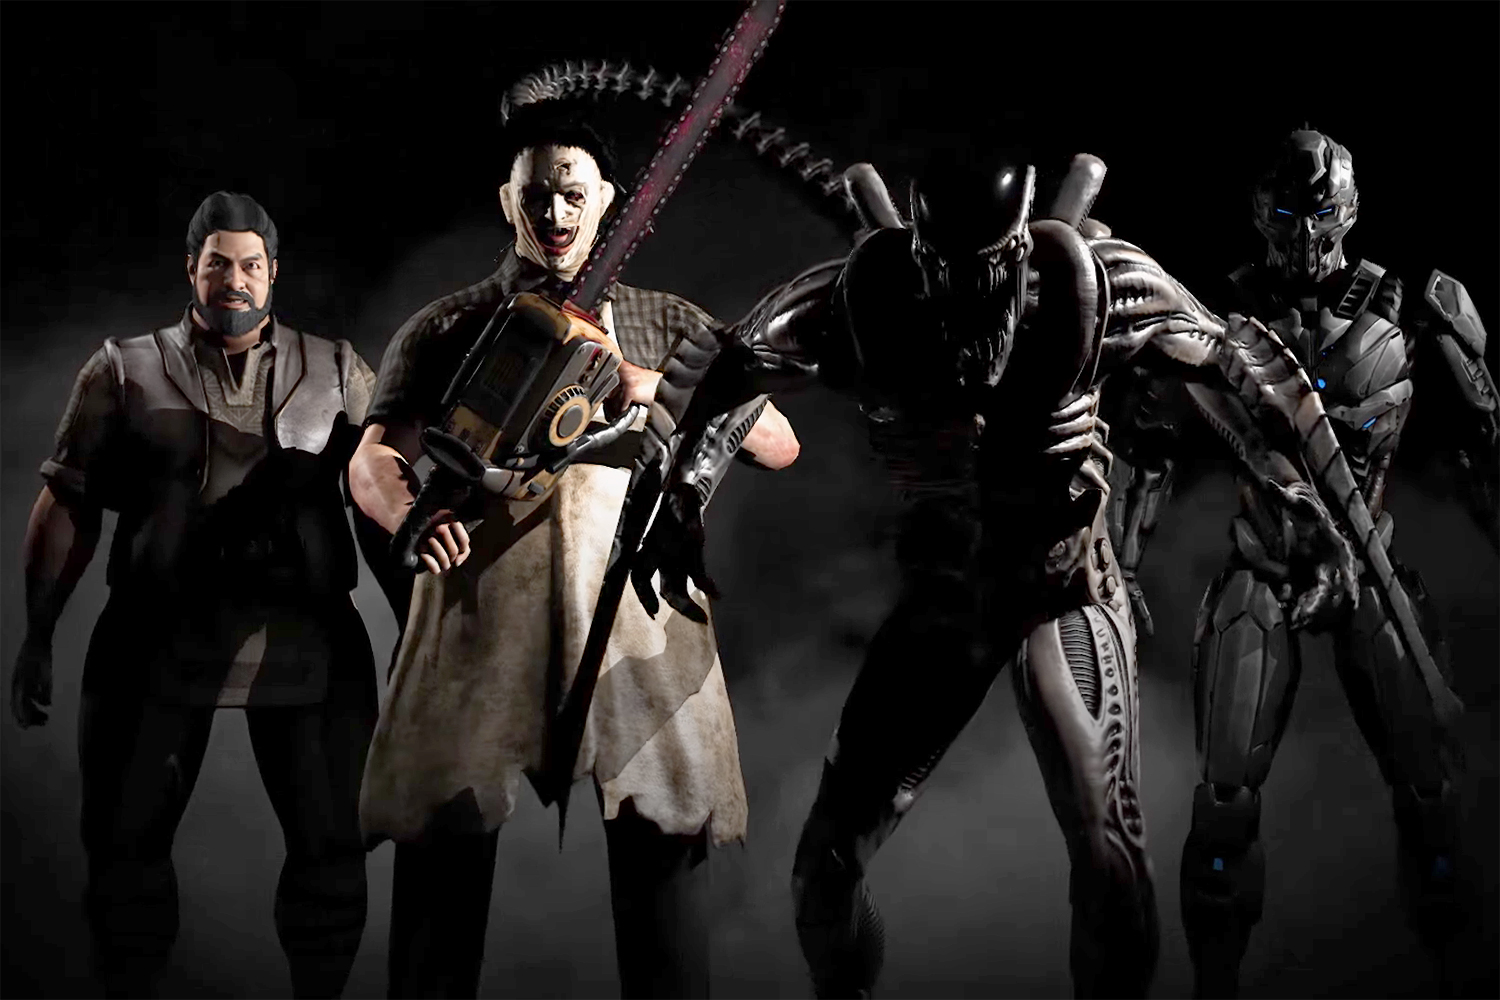 Mortal Kombat X - Todos os Personagens do jogo CONFIRMADOS até agora 